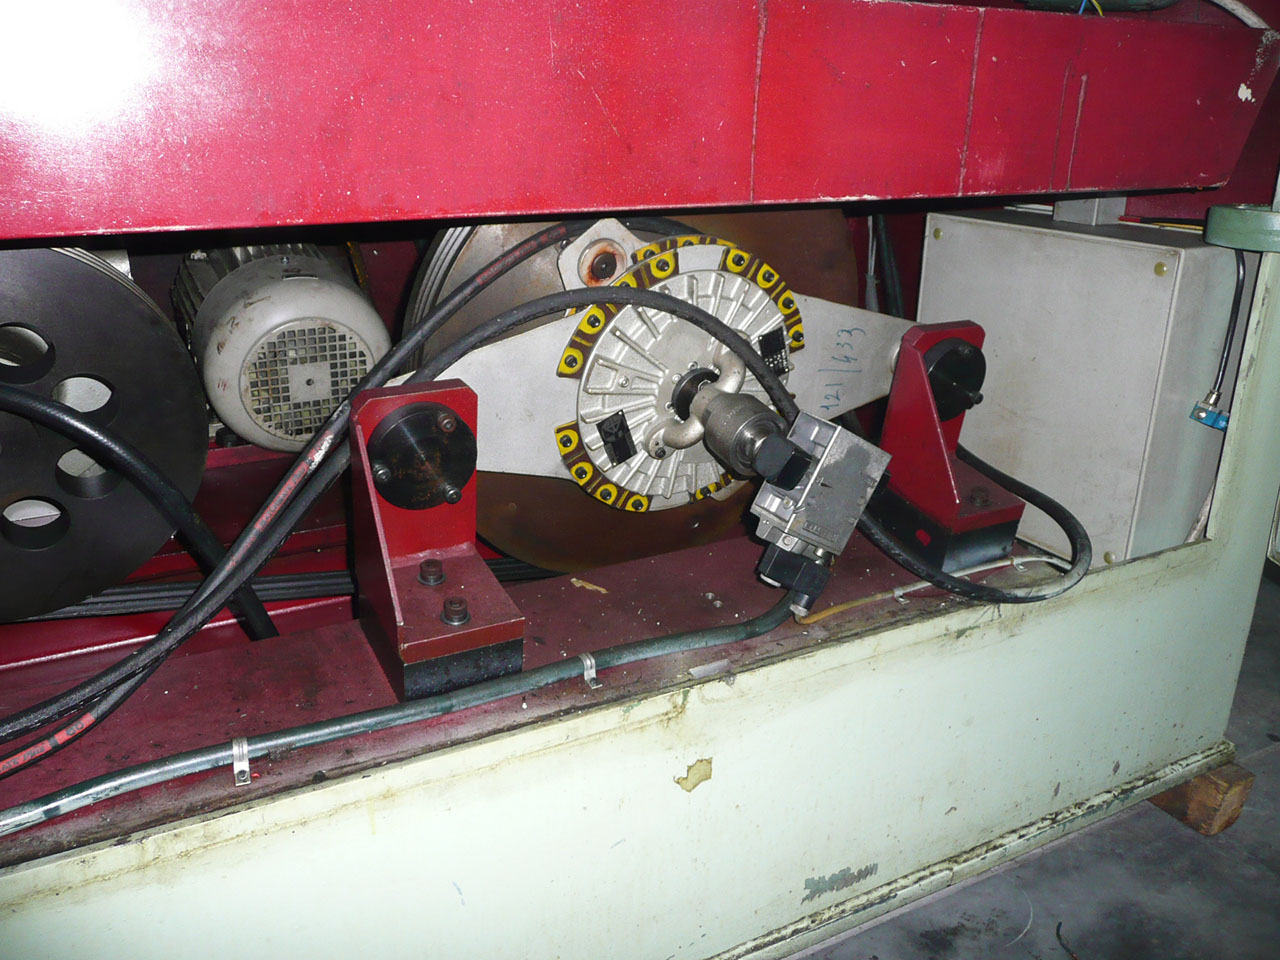 Bihler RM 40 máquina de estampagem e conformação PR2476, utilizada